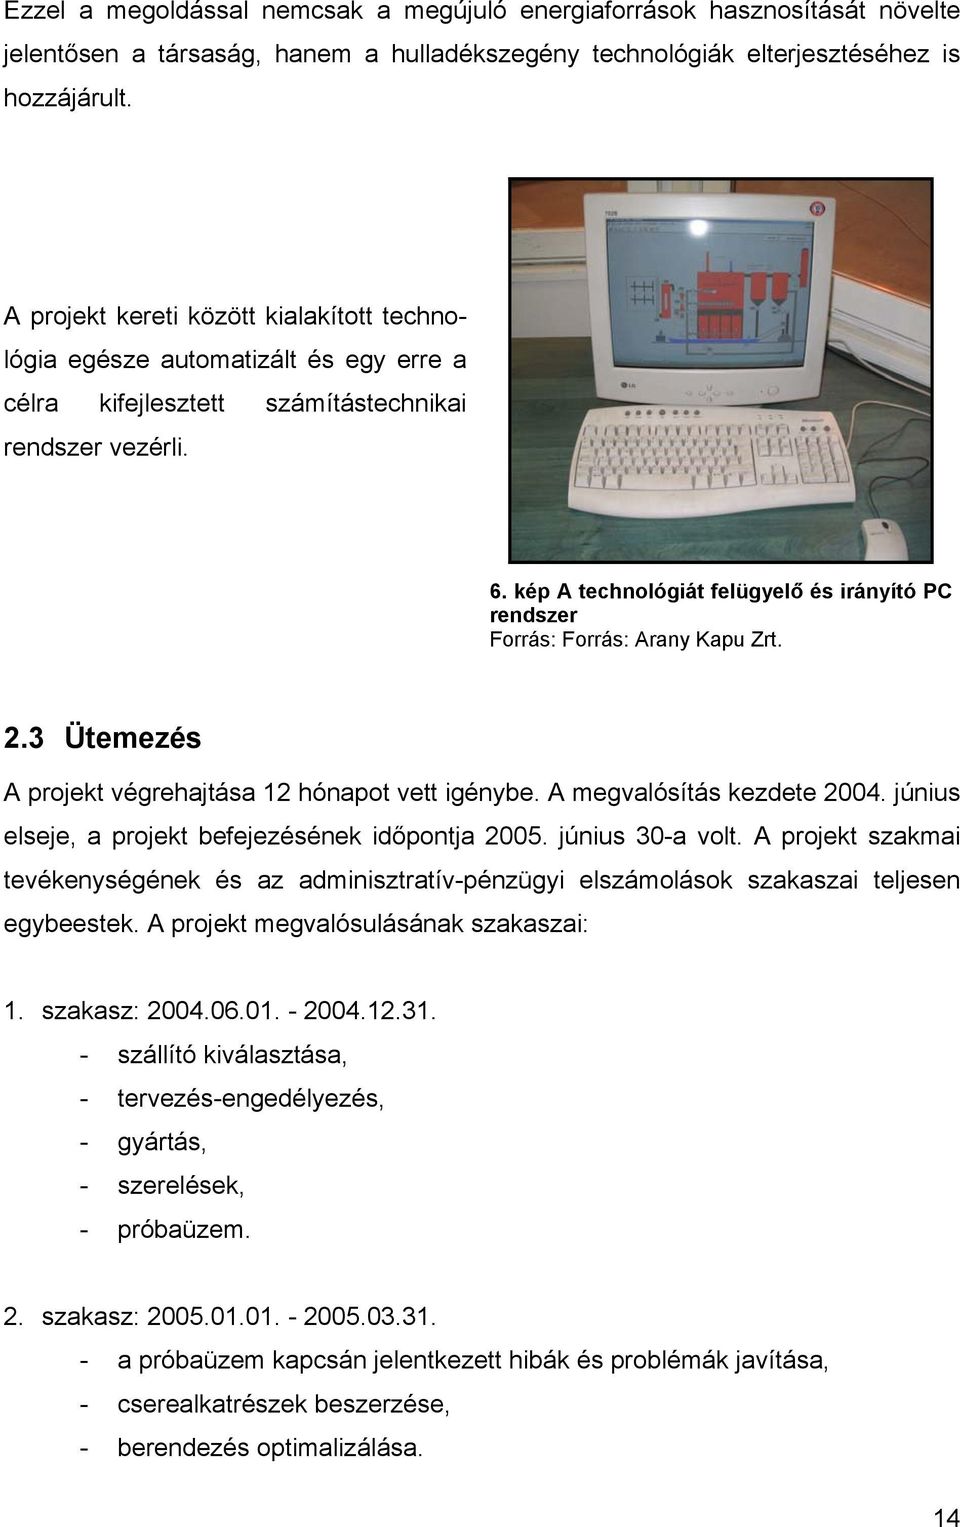 kép A technológiát felügyelő és irányító PC rendszer Forrás: Forrás: Arany Kapu Zrt. 2.3 Ütemezés A projekt végrehajtása 12 hónapot vett igénybe. A megvalósítás kezdete 2004.